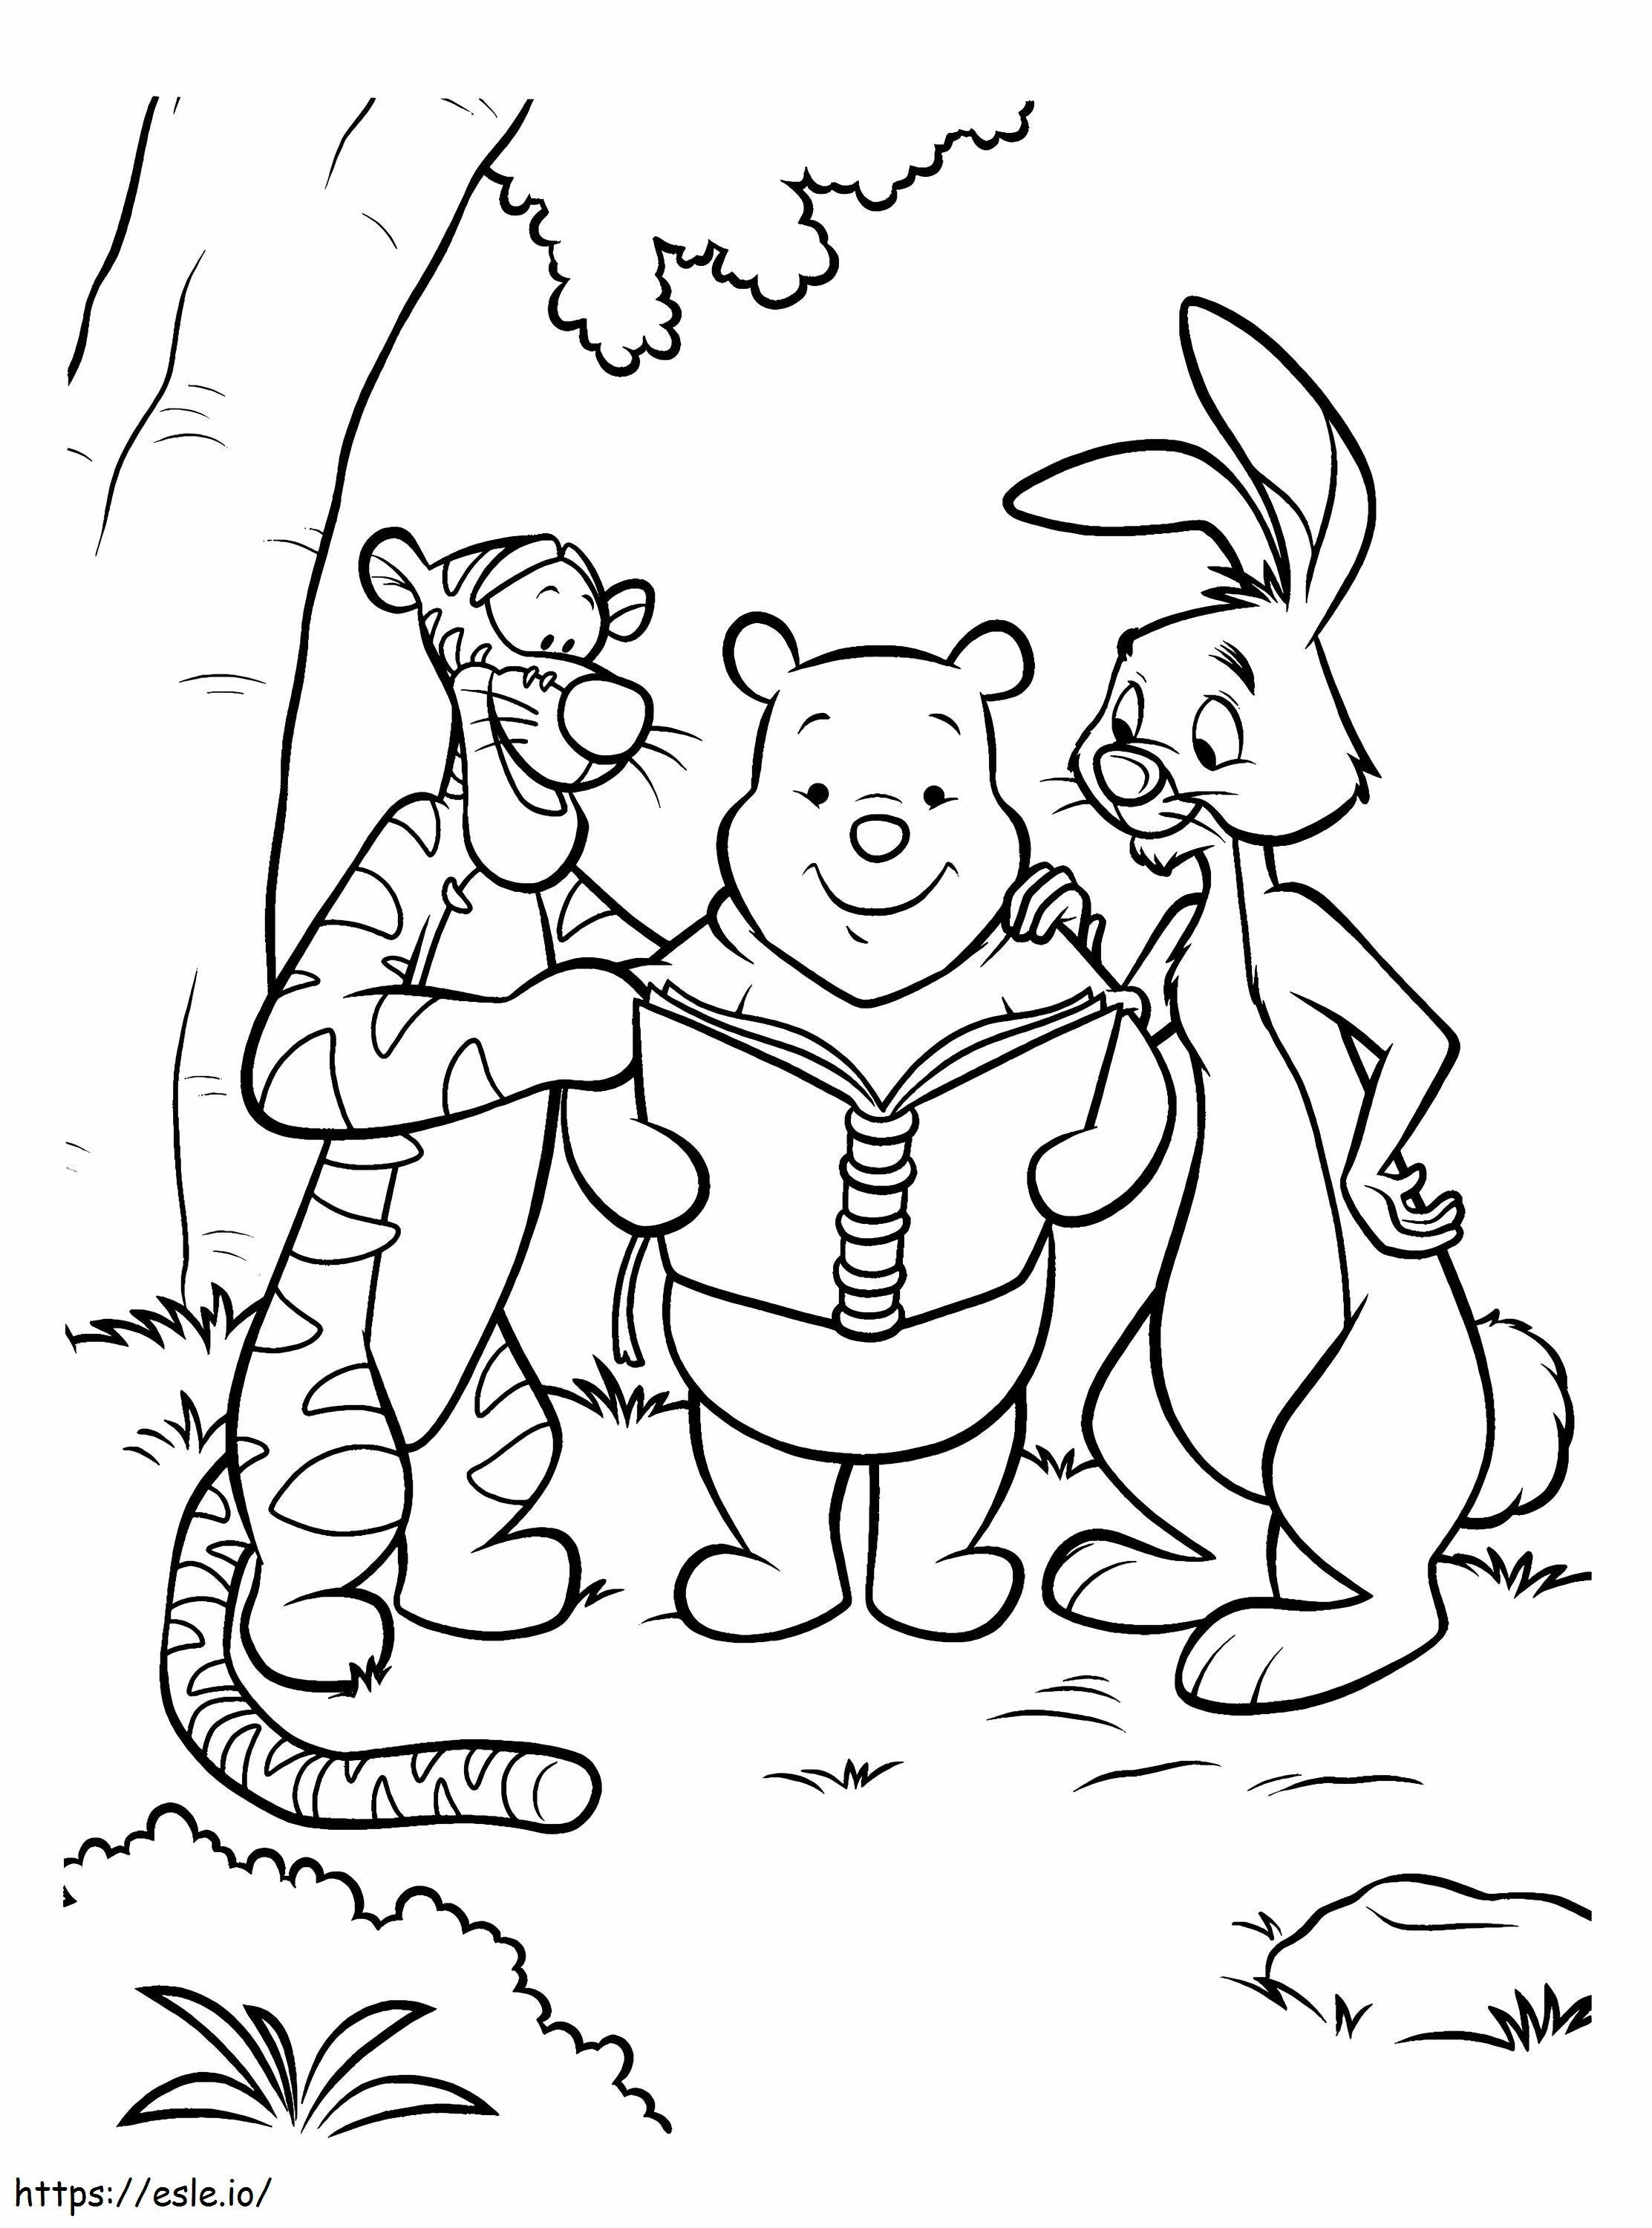 Reading și prietenii lui Winnie De Pooh de colorat